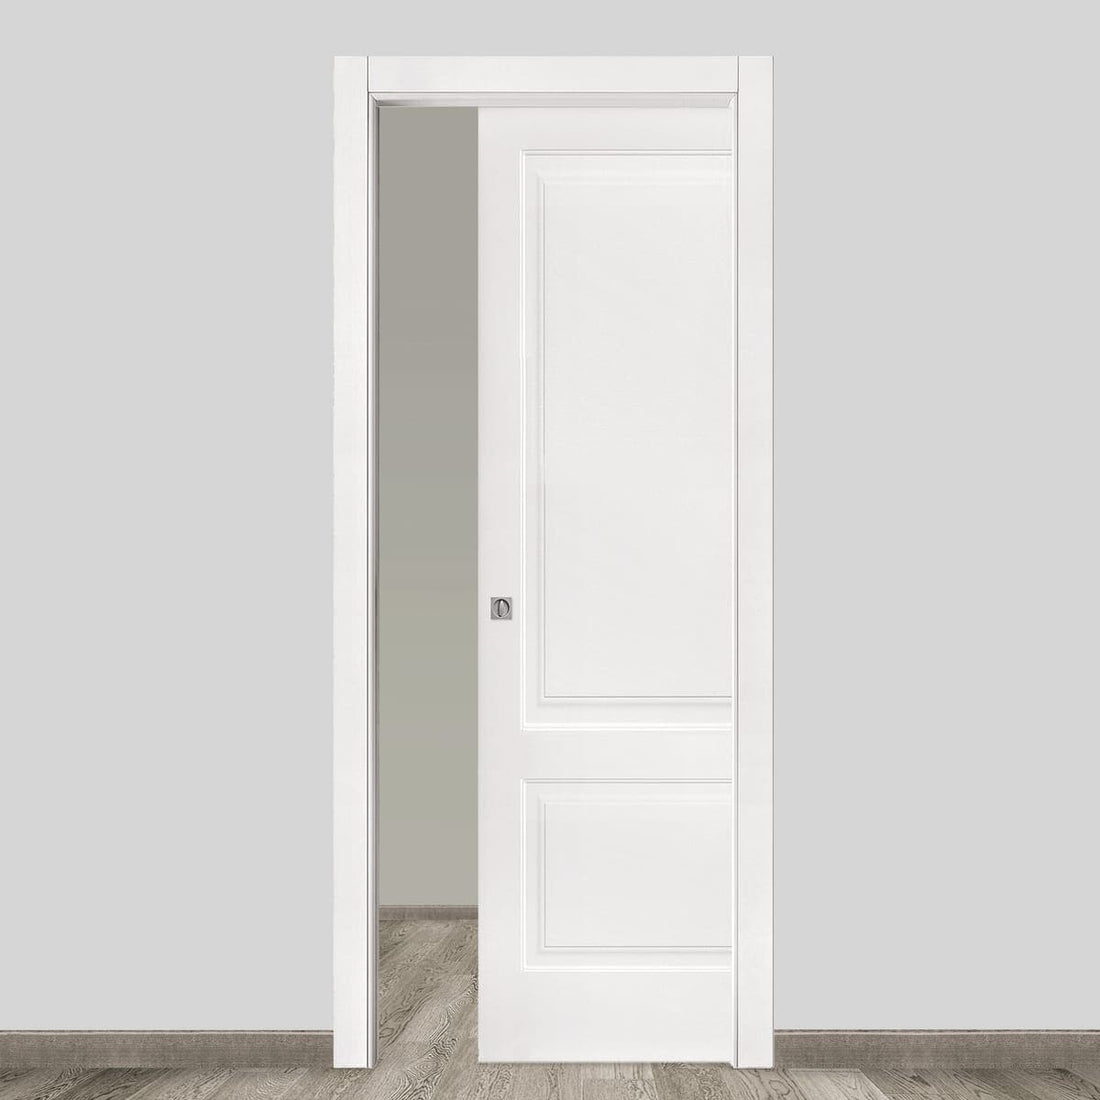 DENEB SLIDING DOOR INSIDE WALL 210 X 70 WHITE LACQUERED - best price from Maltashopper.com BR450001908